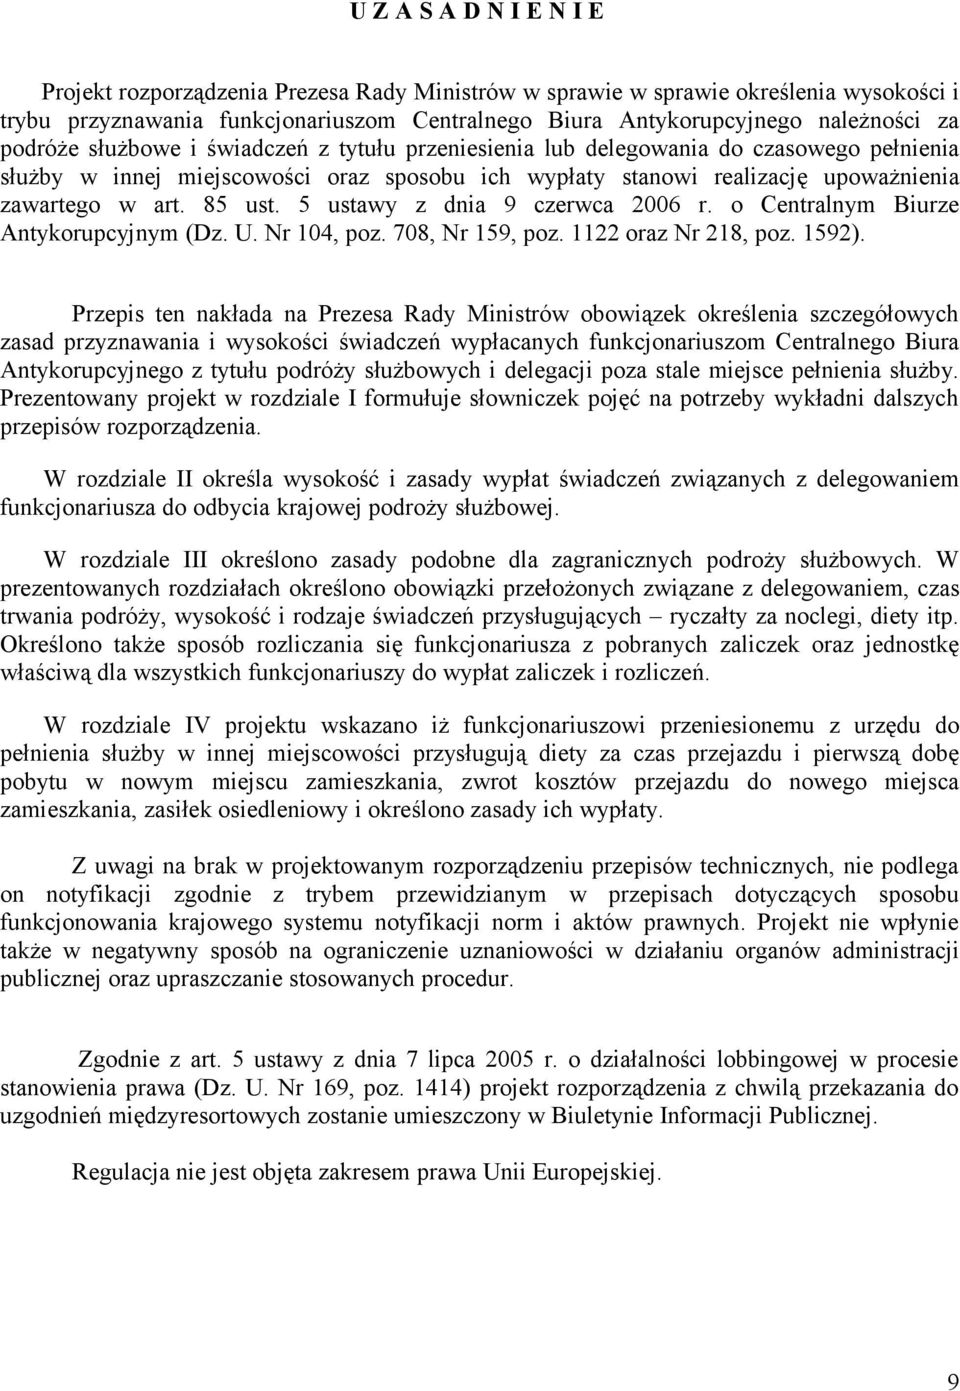 5 ustawy z dnia 9 czerwca 2006 r. o Centralnym Biurze Antykorupcyjnym (Dz. U. Nr 104, poz. 708, Nr 159, poz. 1122 oraz Nr 218, poz. 1592).